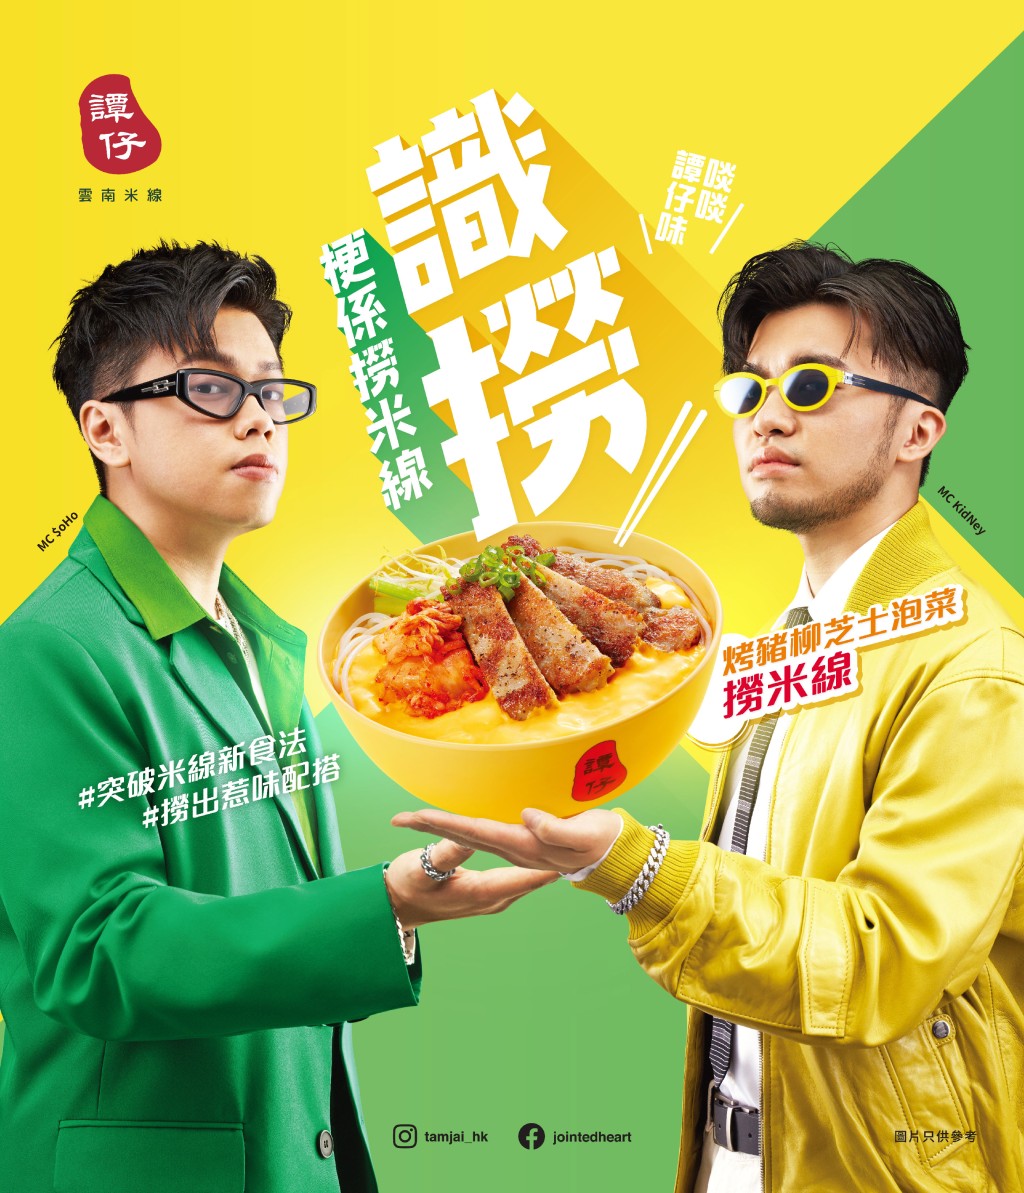 人氣hip-hop組合MC $oHo & KidNey宣傳烤豬柳芝士泡菜撈米線。